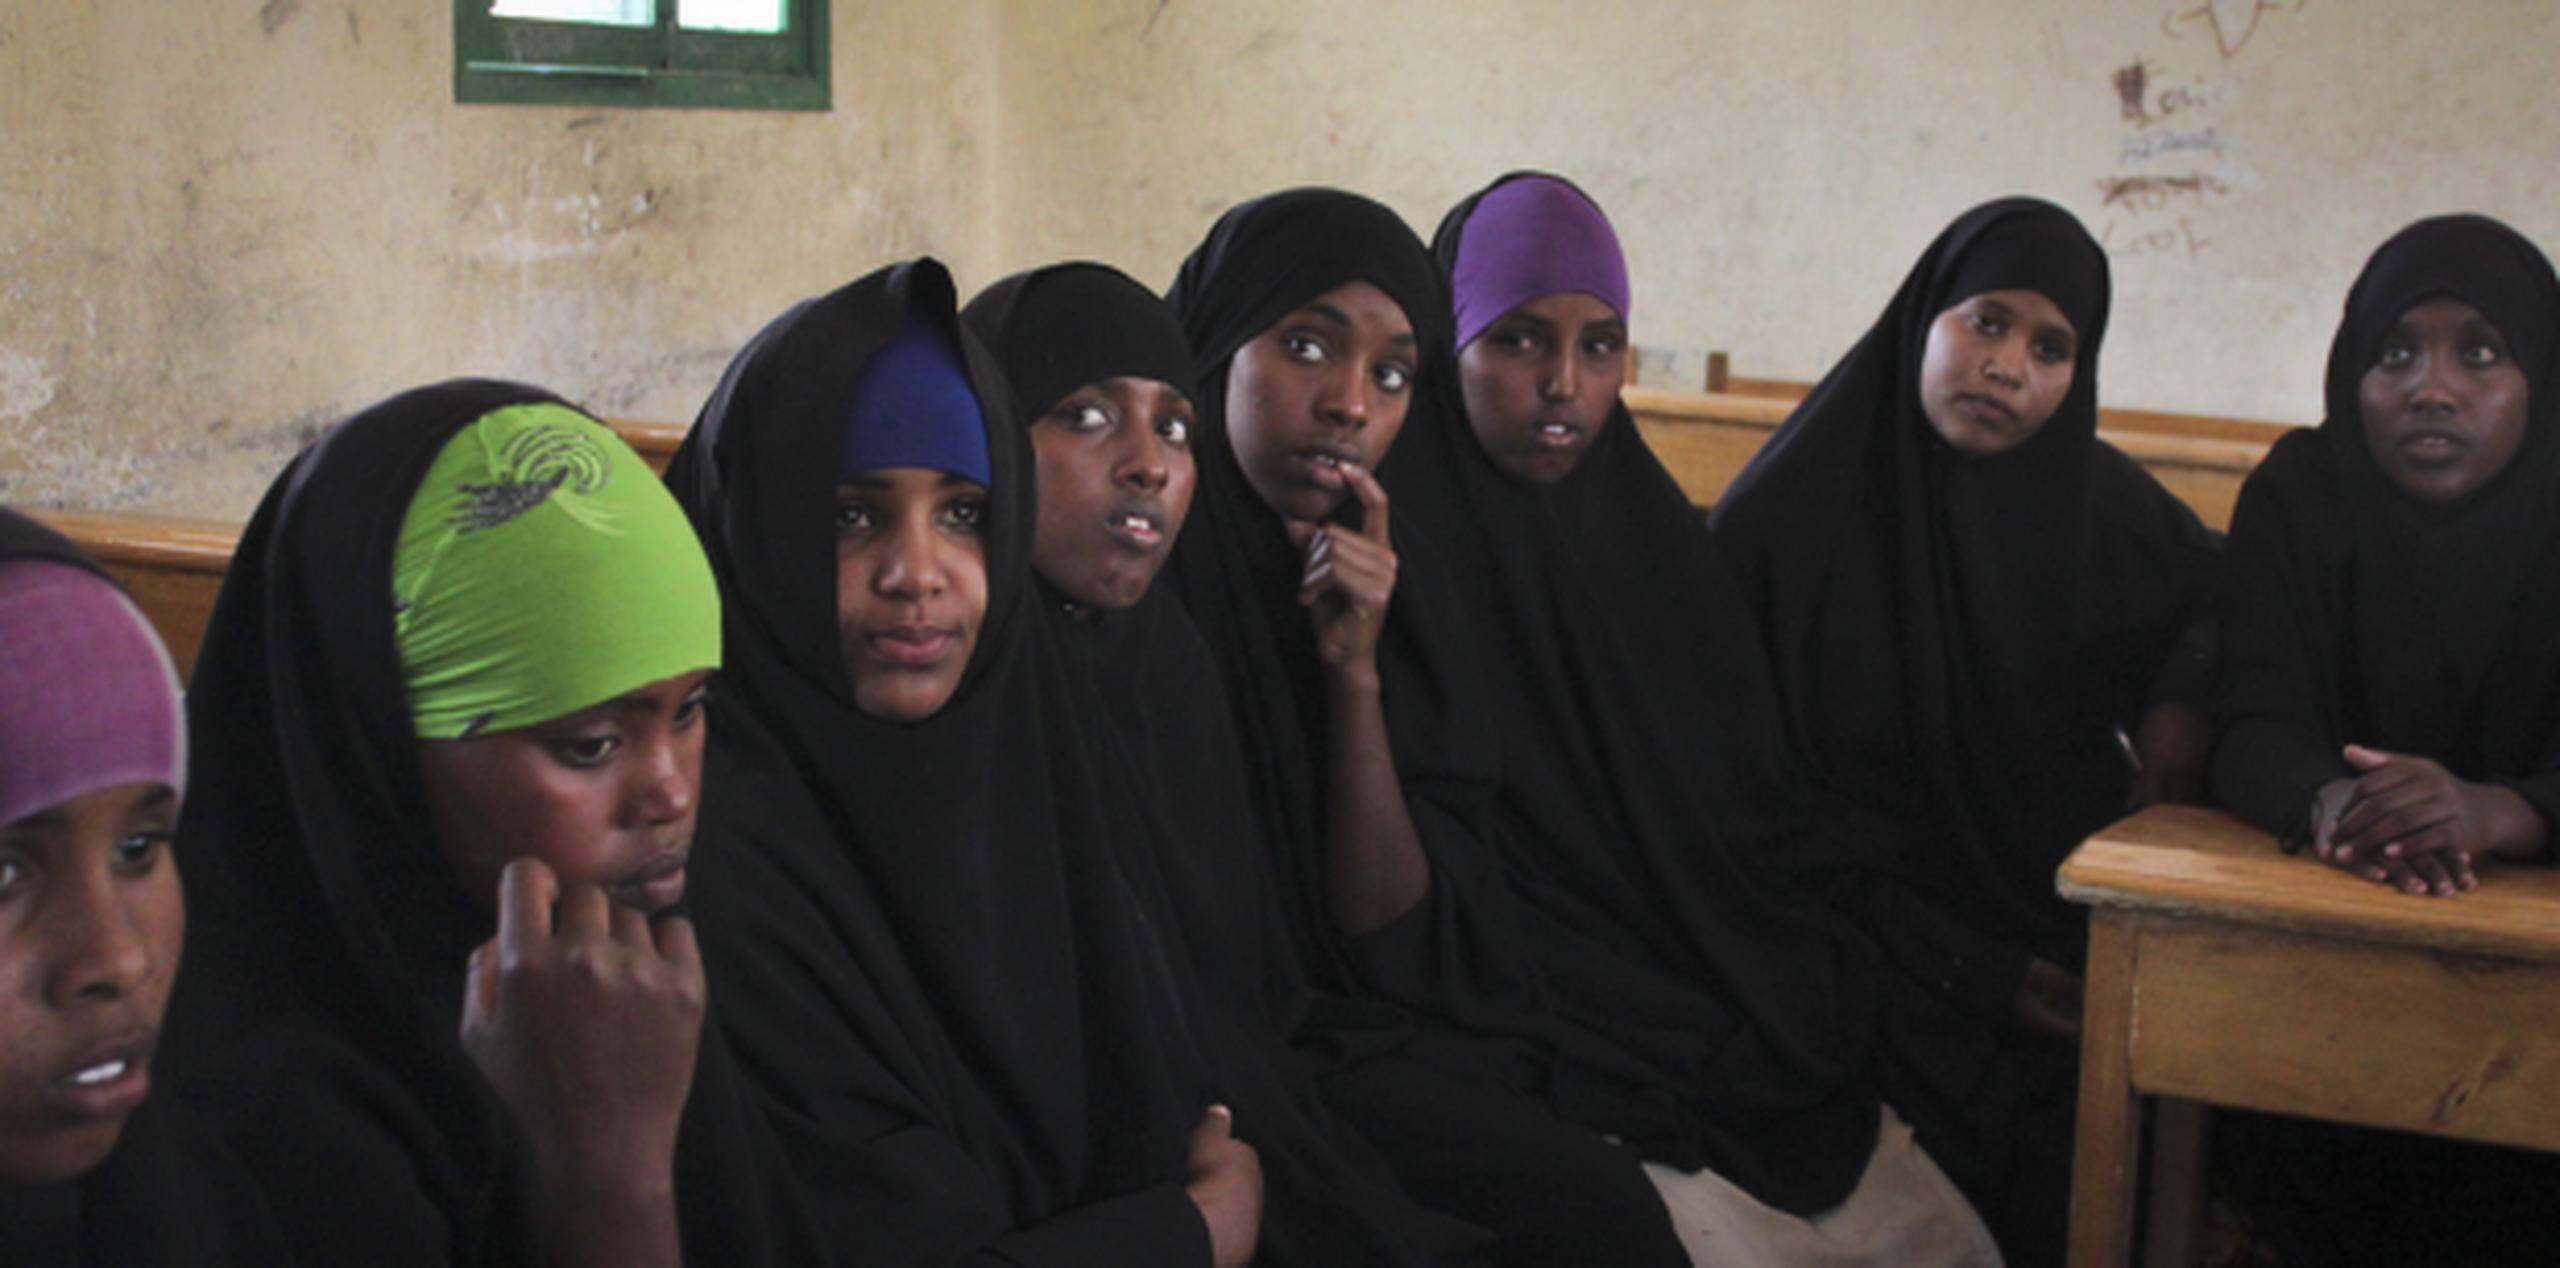 Al término del seminario, los líderes religiosos dijeron que no se pusieron de acuerdo en abandonar la mutilación genital de las niñas y por lo tanto seguirá en pie. (AP)